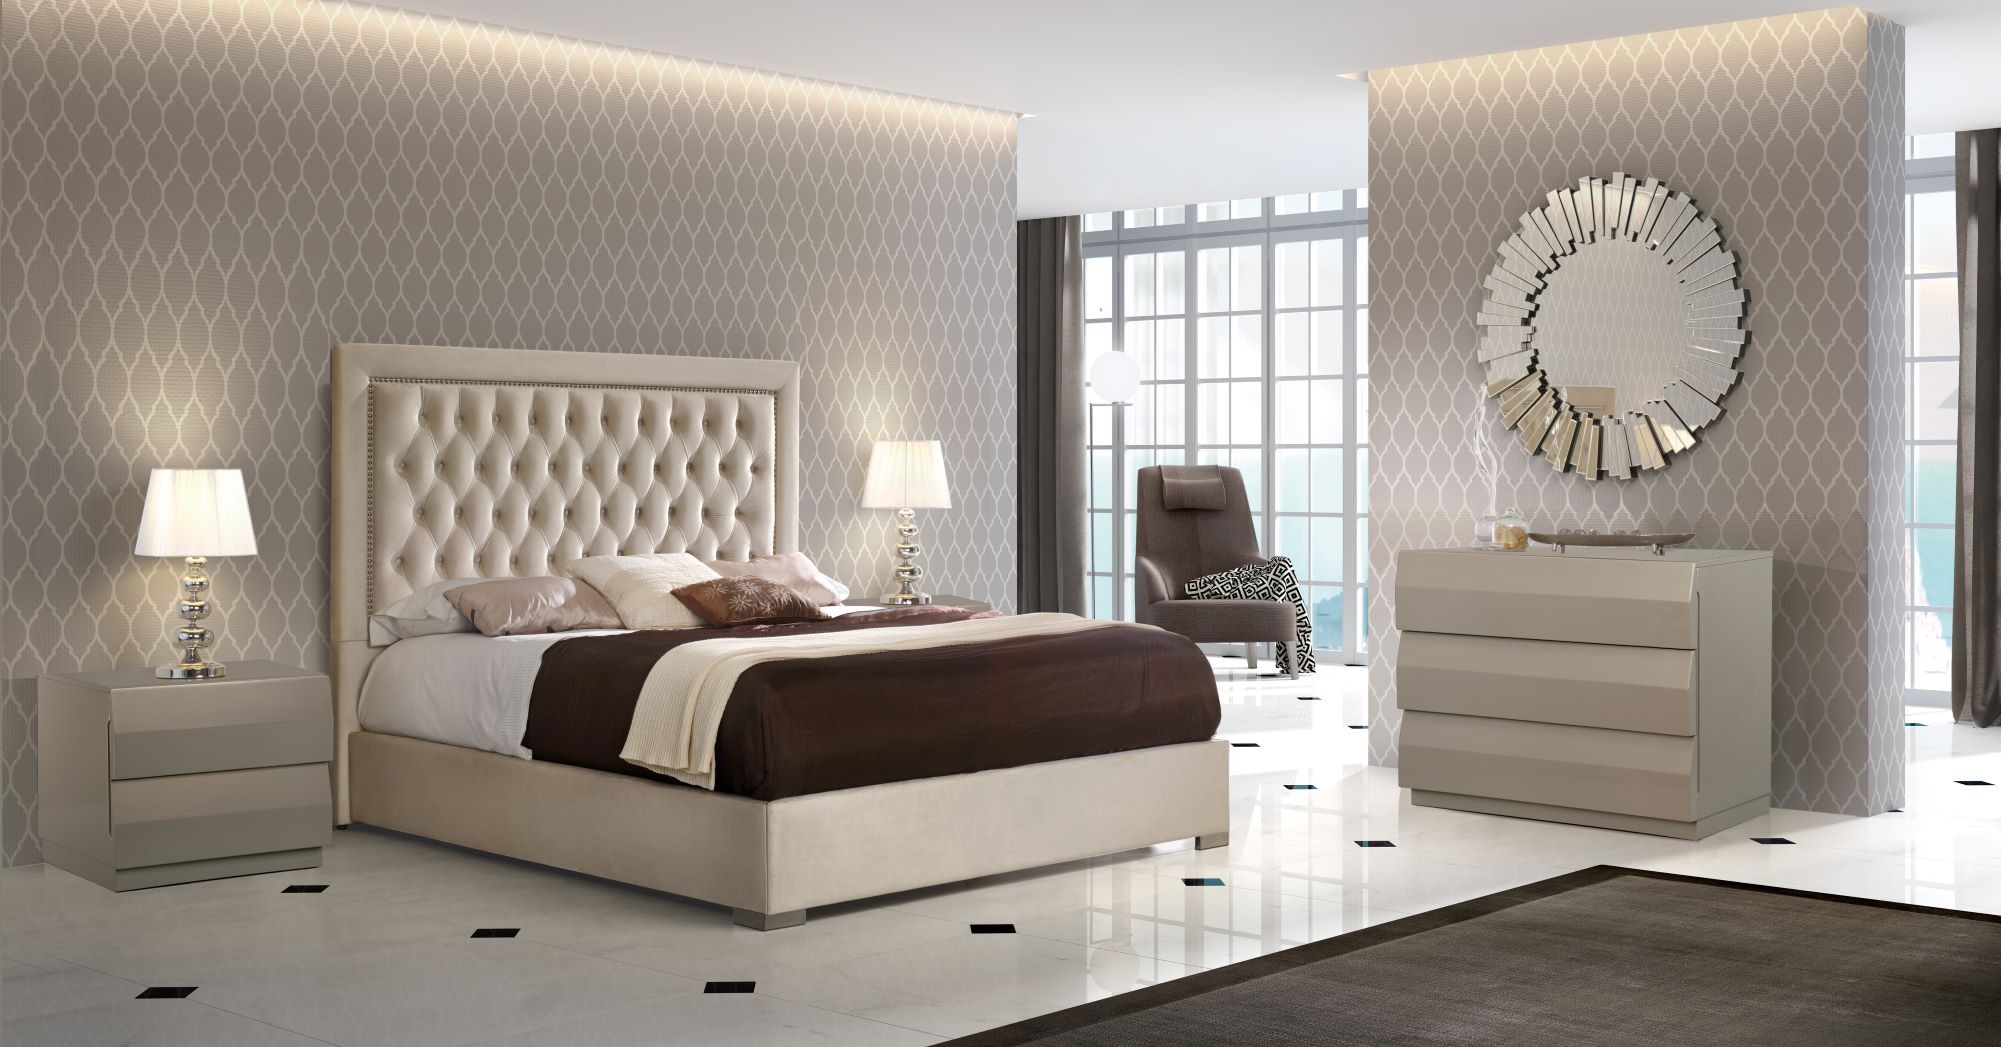 Estila Chesterfield luxusná manželská posteľ Adagio s čalúnením a s kovovými nožičkami 150-180cm